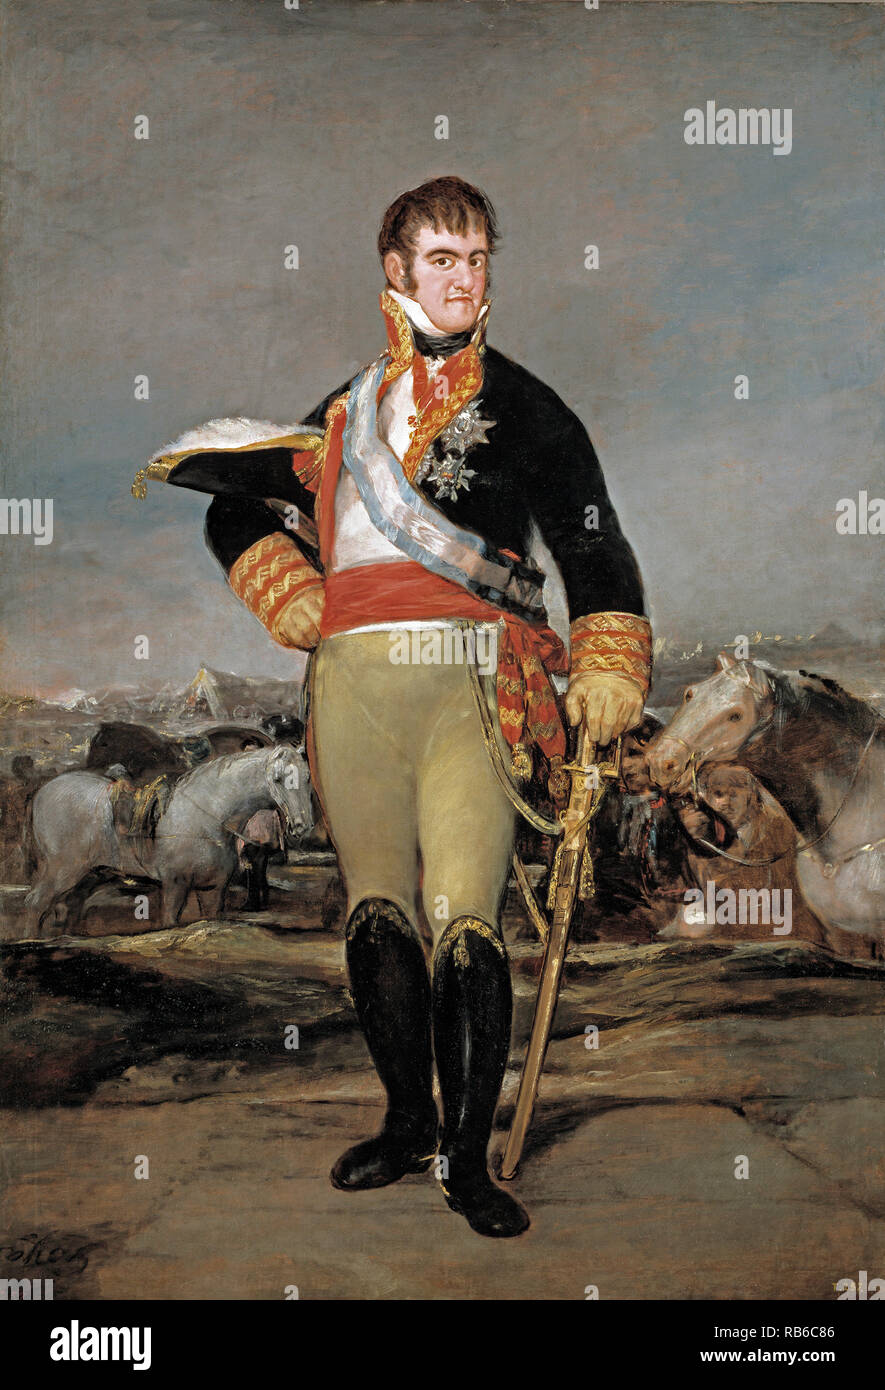 Ferdinando VII di Spagna, Re Ferdinando VII (1784 - 1833) due volte Re di Spagna: nel 1808 e di nuovo dal 1813 fino alla sua morte. Foto Stock